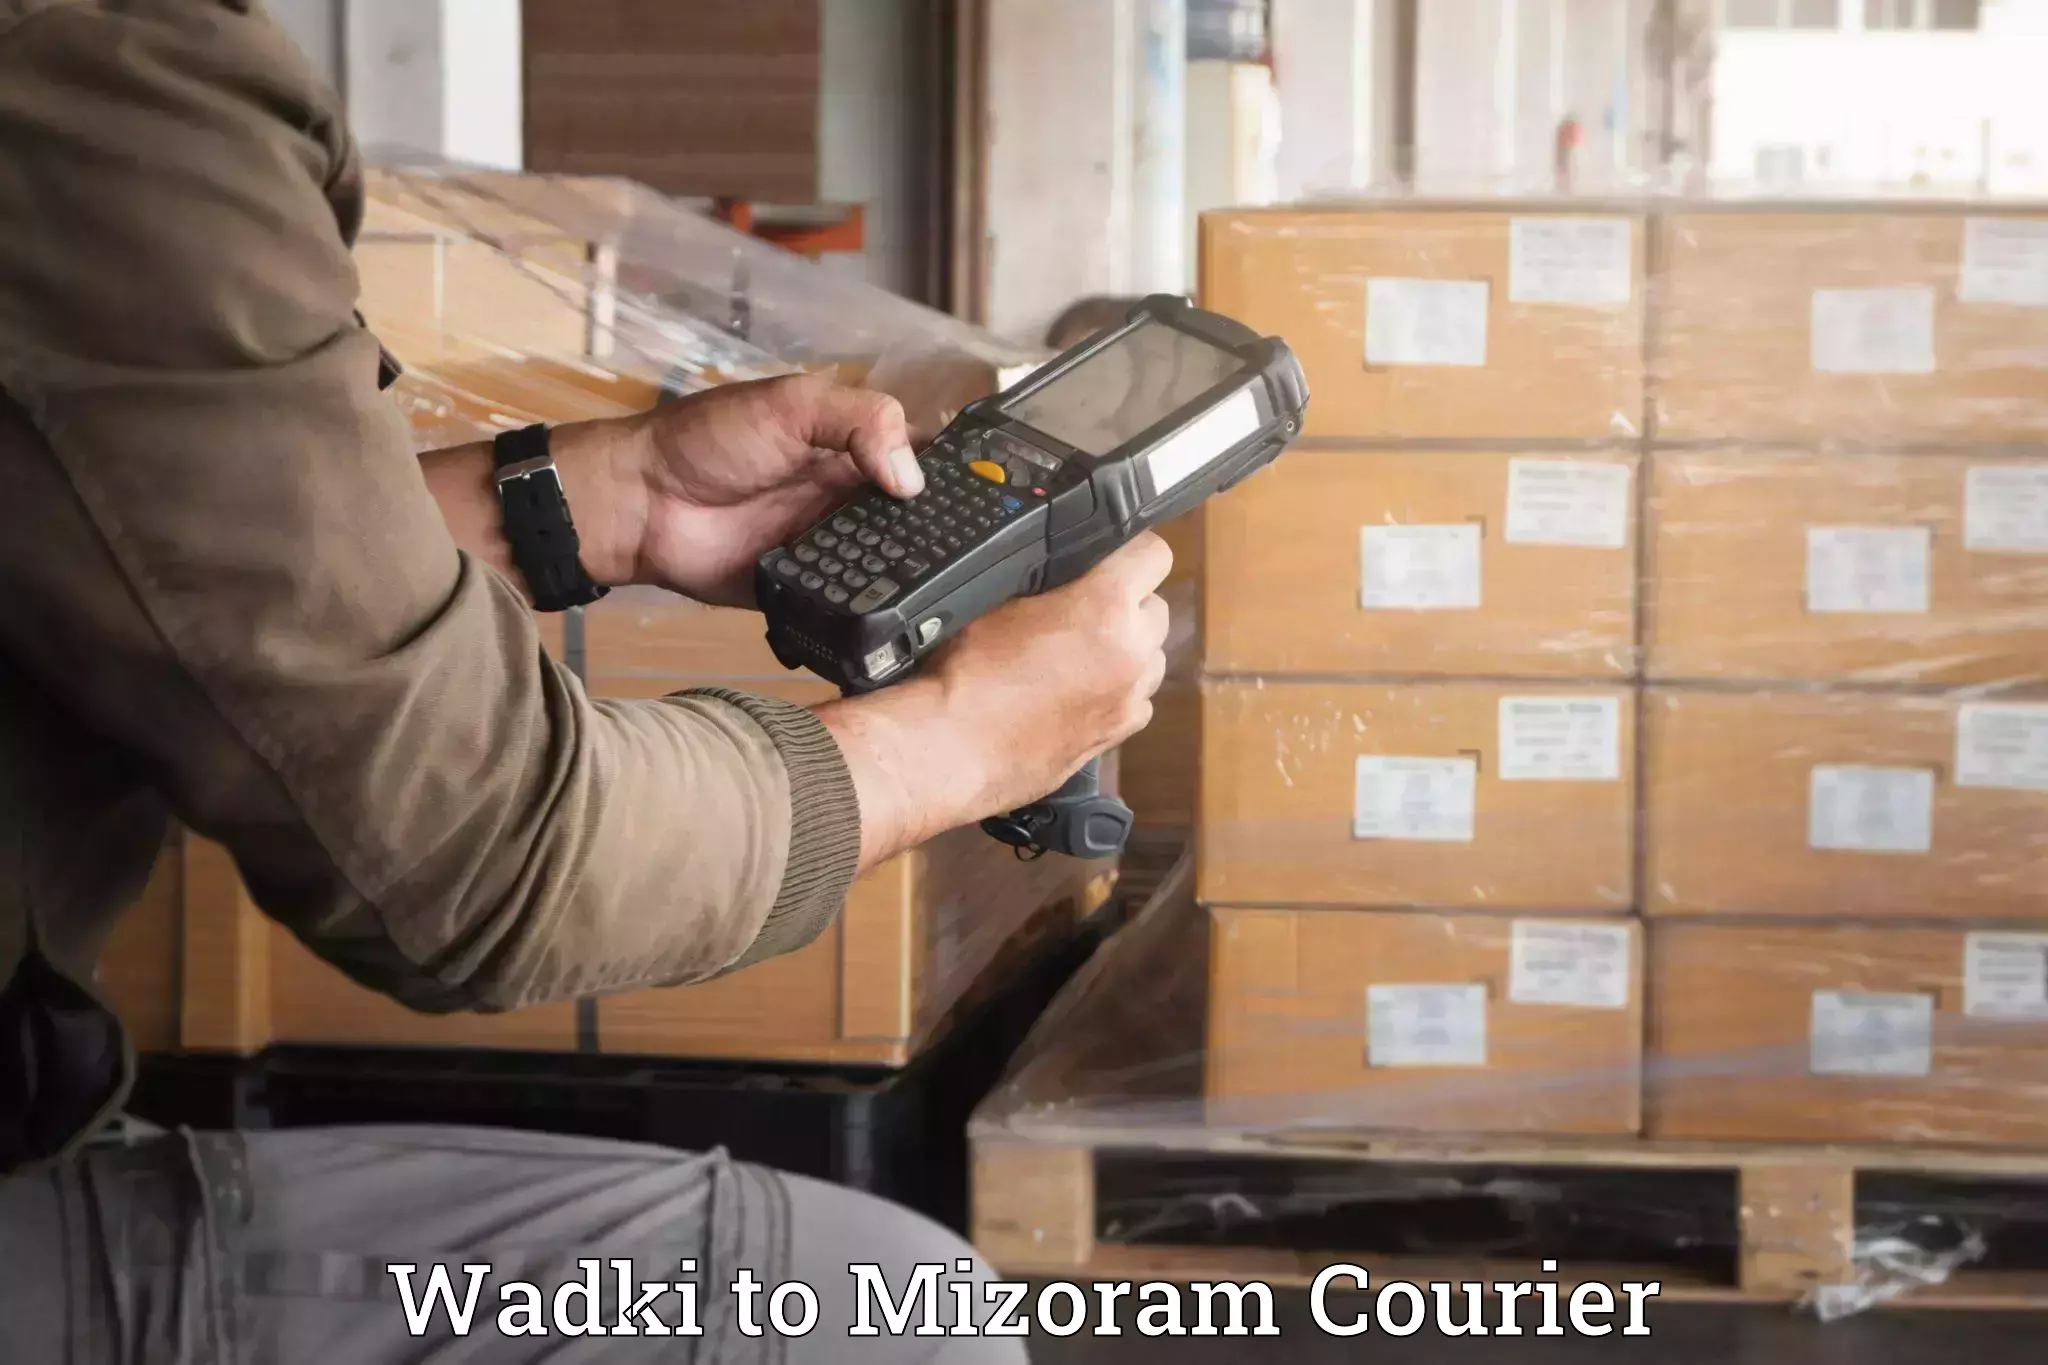 Door-to-door baggage service Wadki to Mizoram